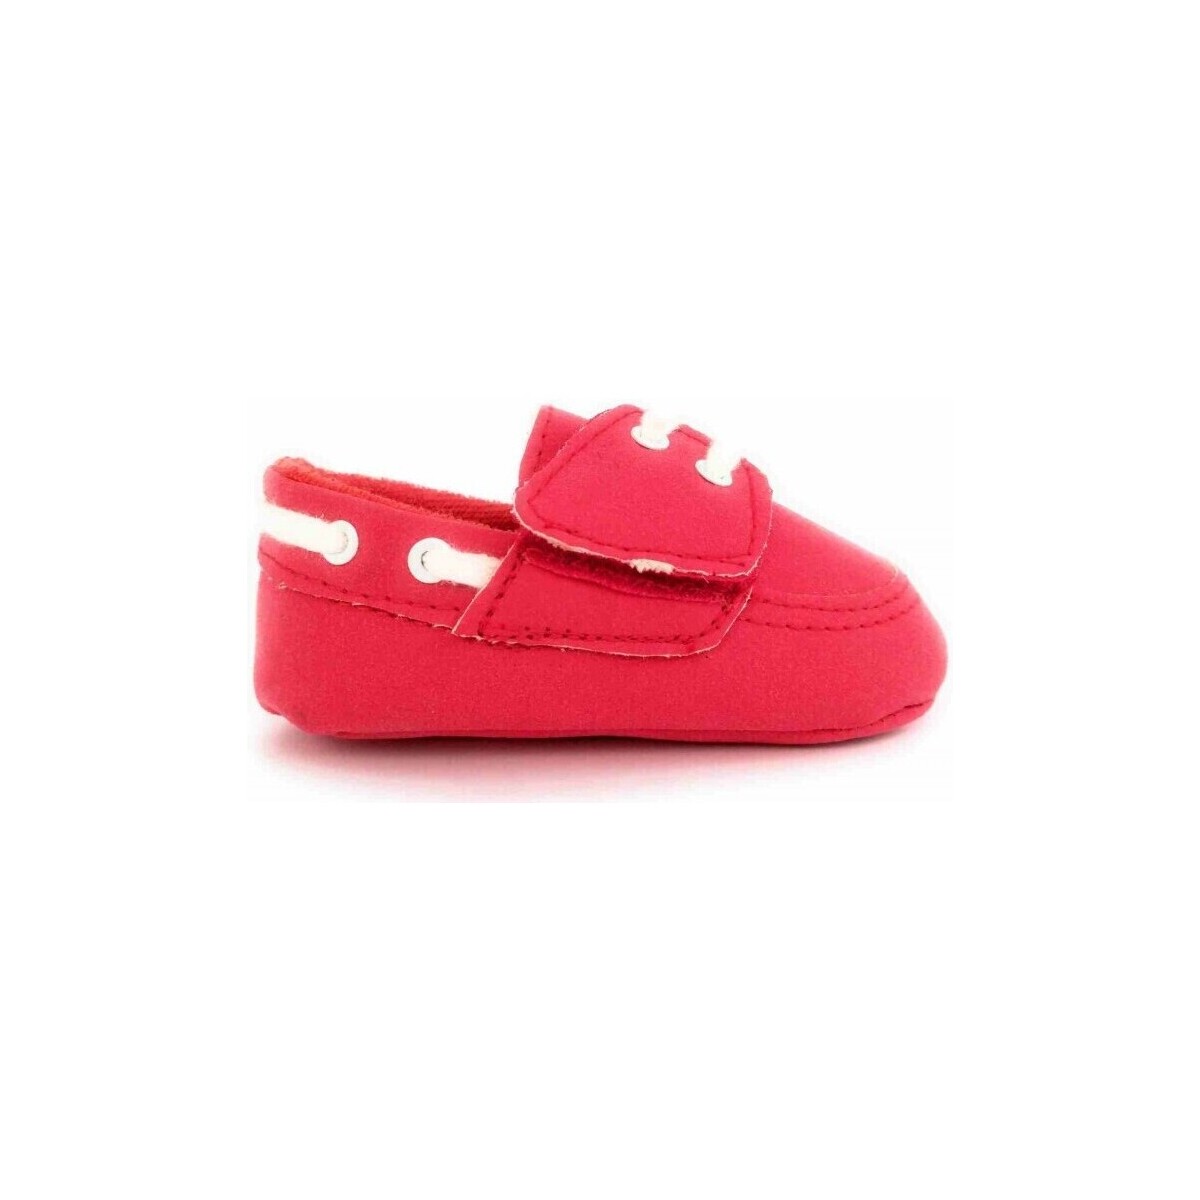 Schuhe Jungen Babyschuhe Colores 10083-15 Rot